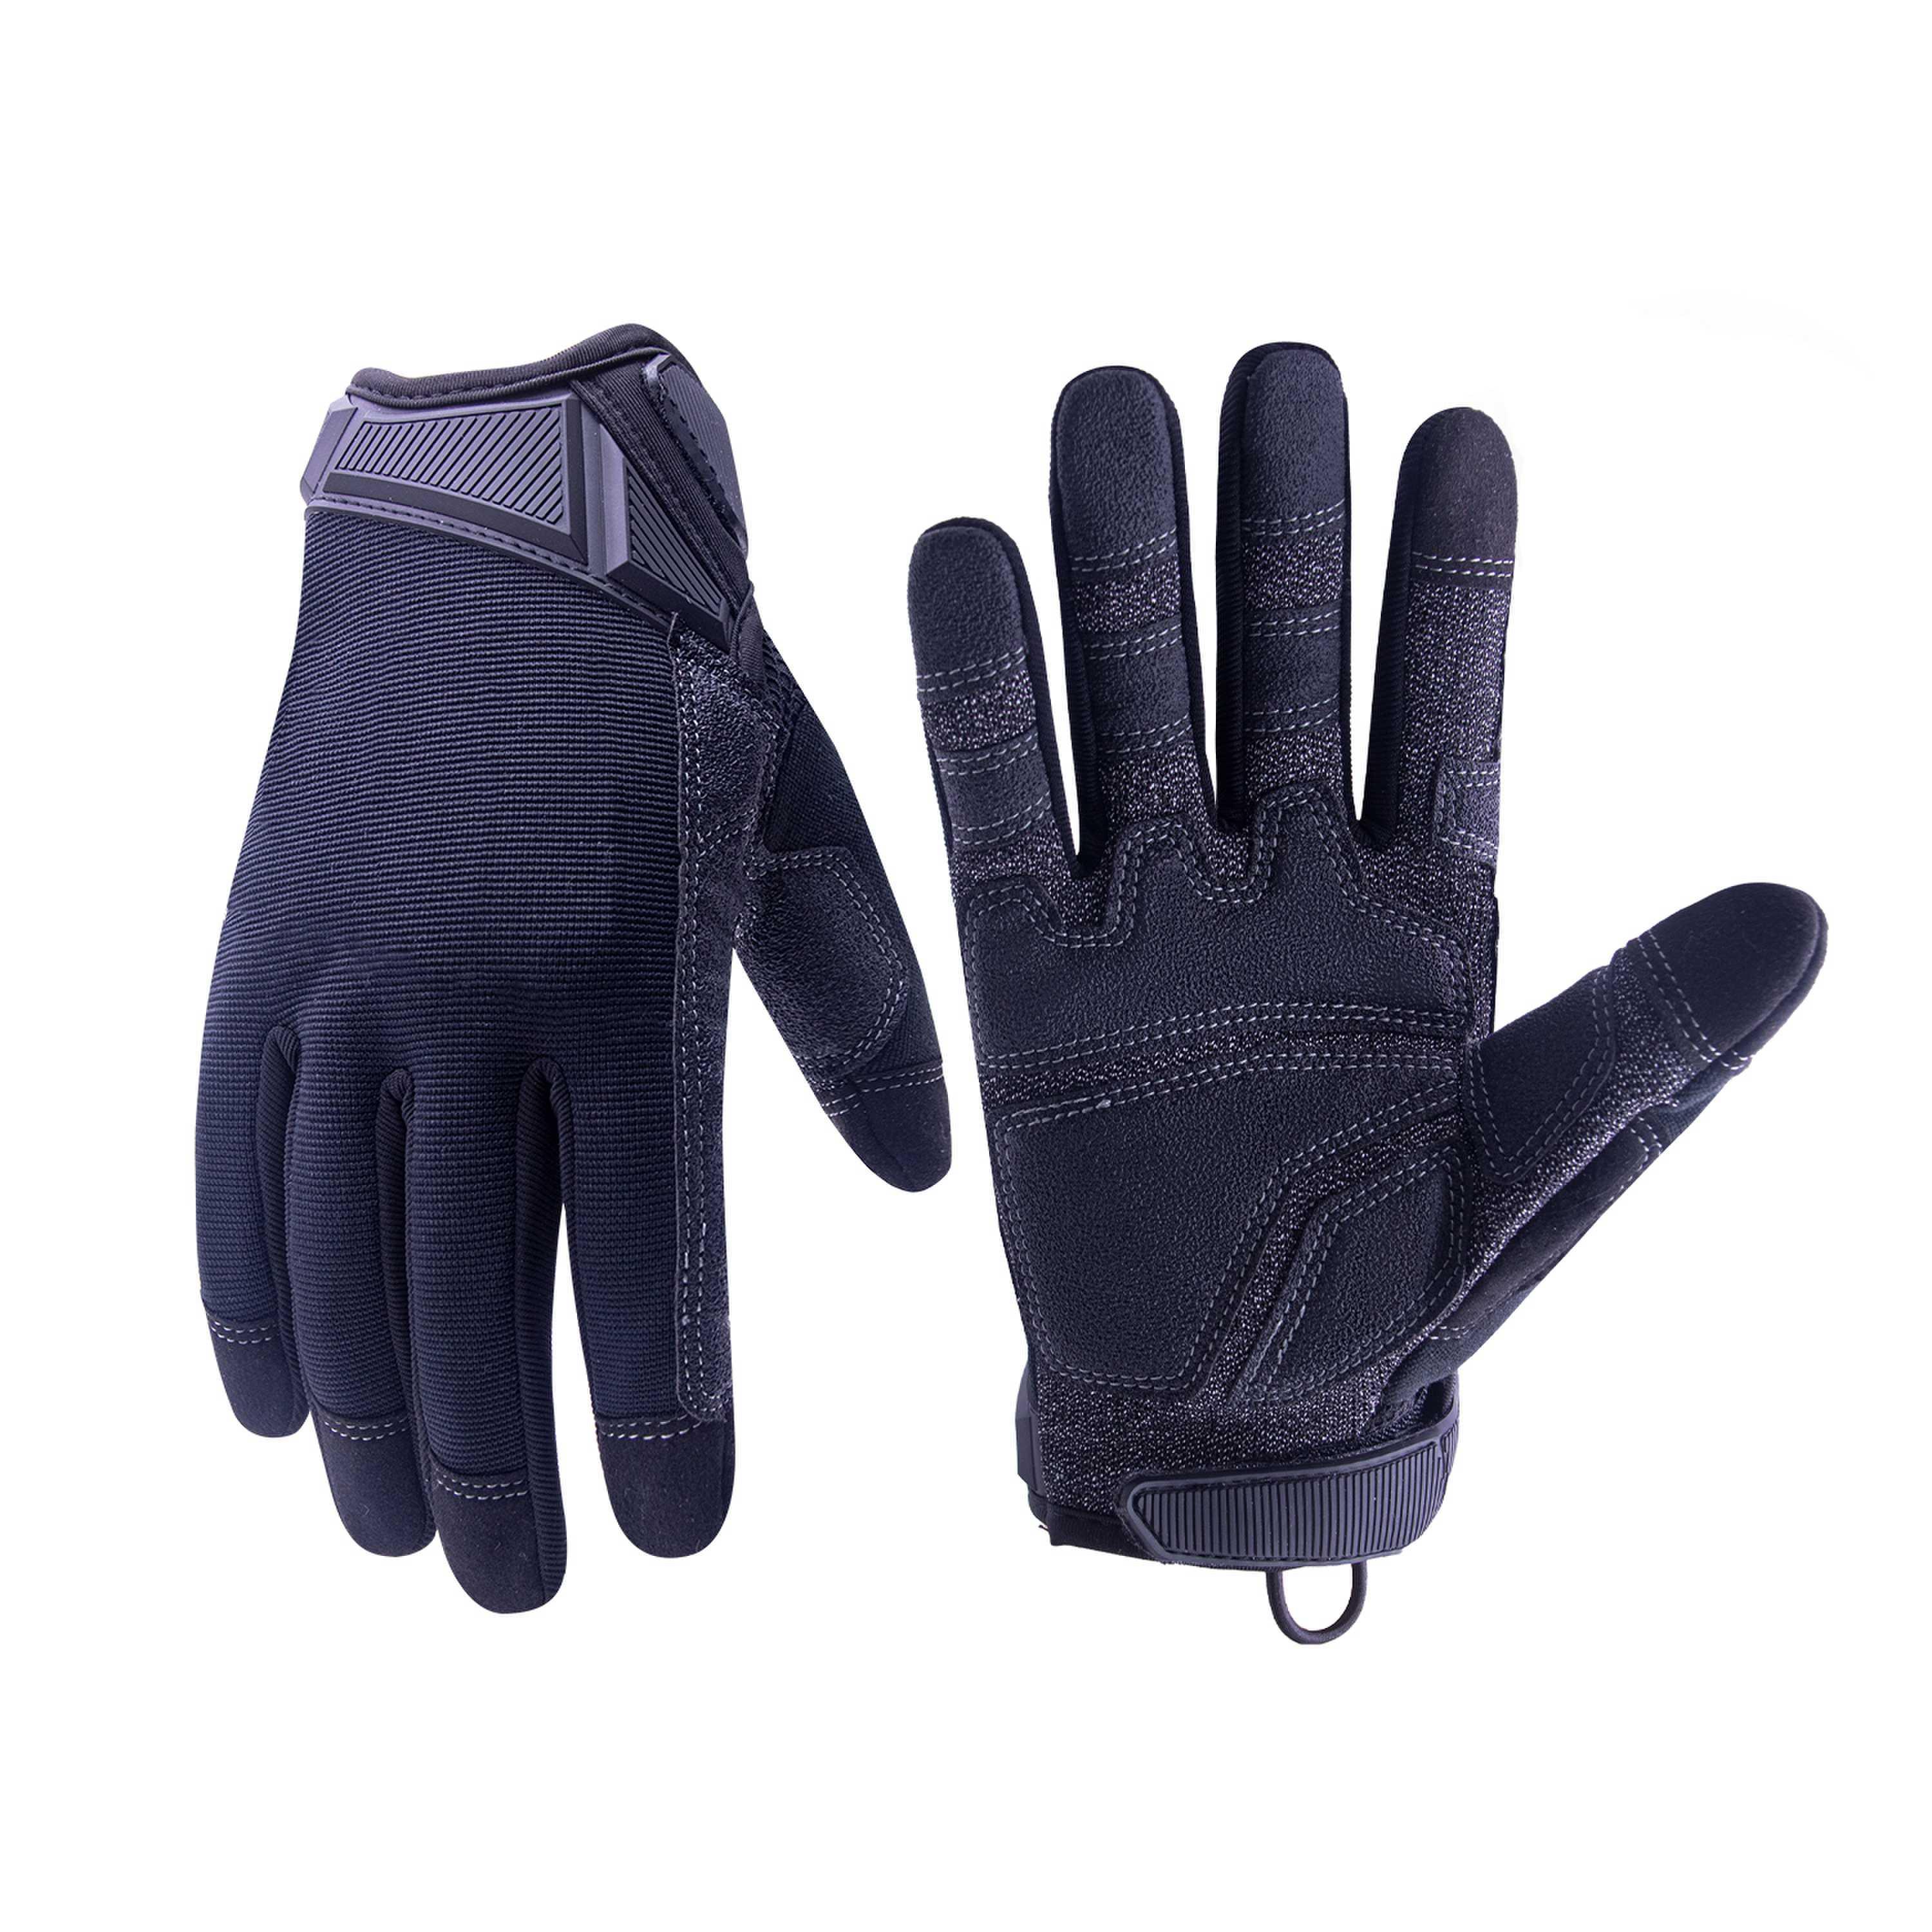 6189 PRI custom logo HPPE cut level 5 palm uwrist cuff TPR puller indestructible tactical work gloves